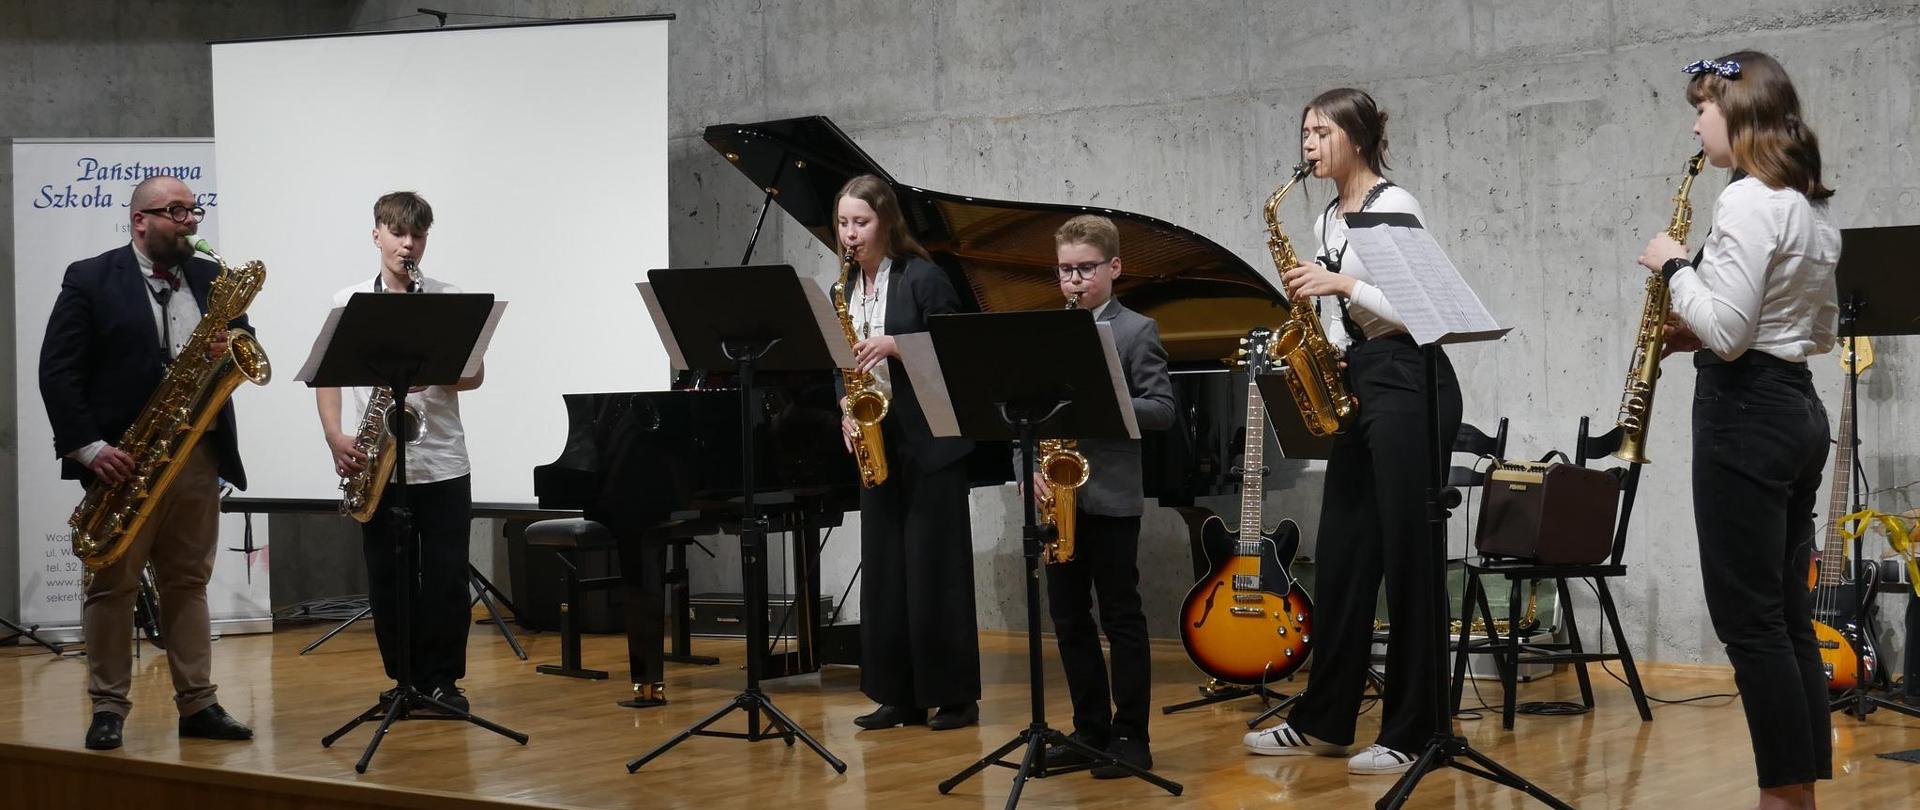 Grupa uczniów i nauczyciel grają na scenie na saksofonach